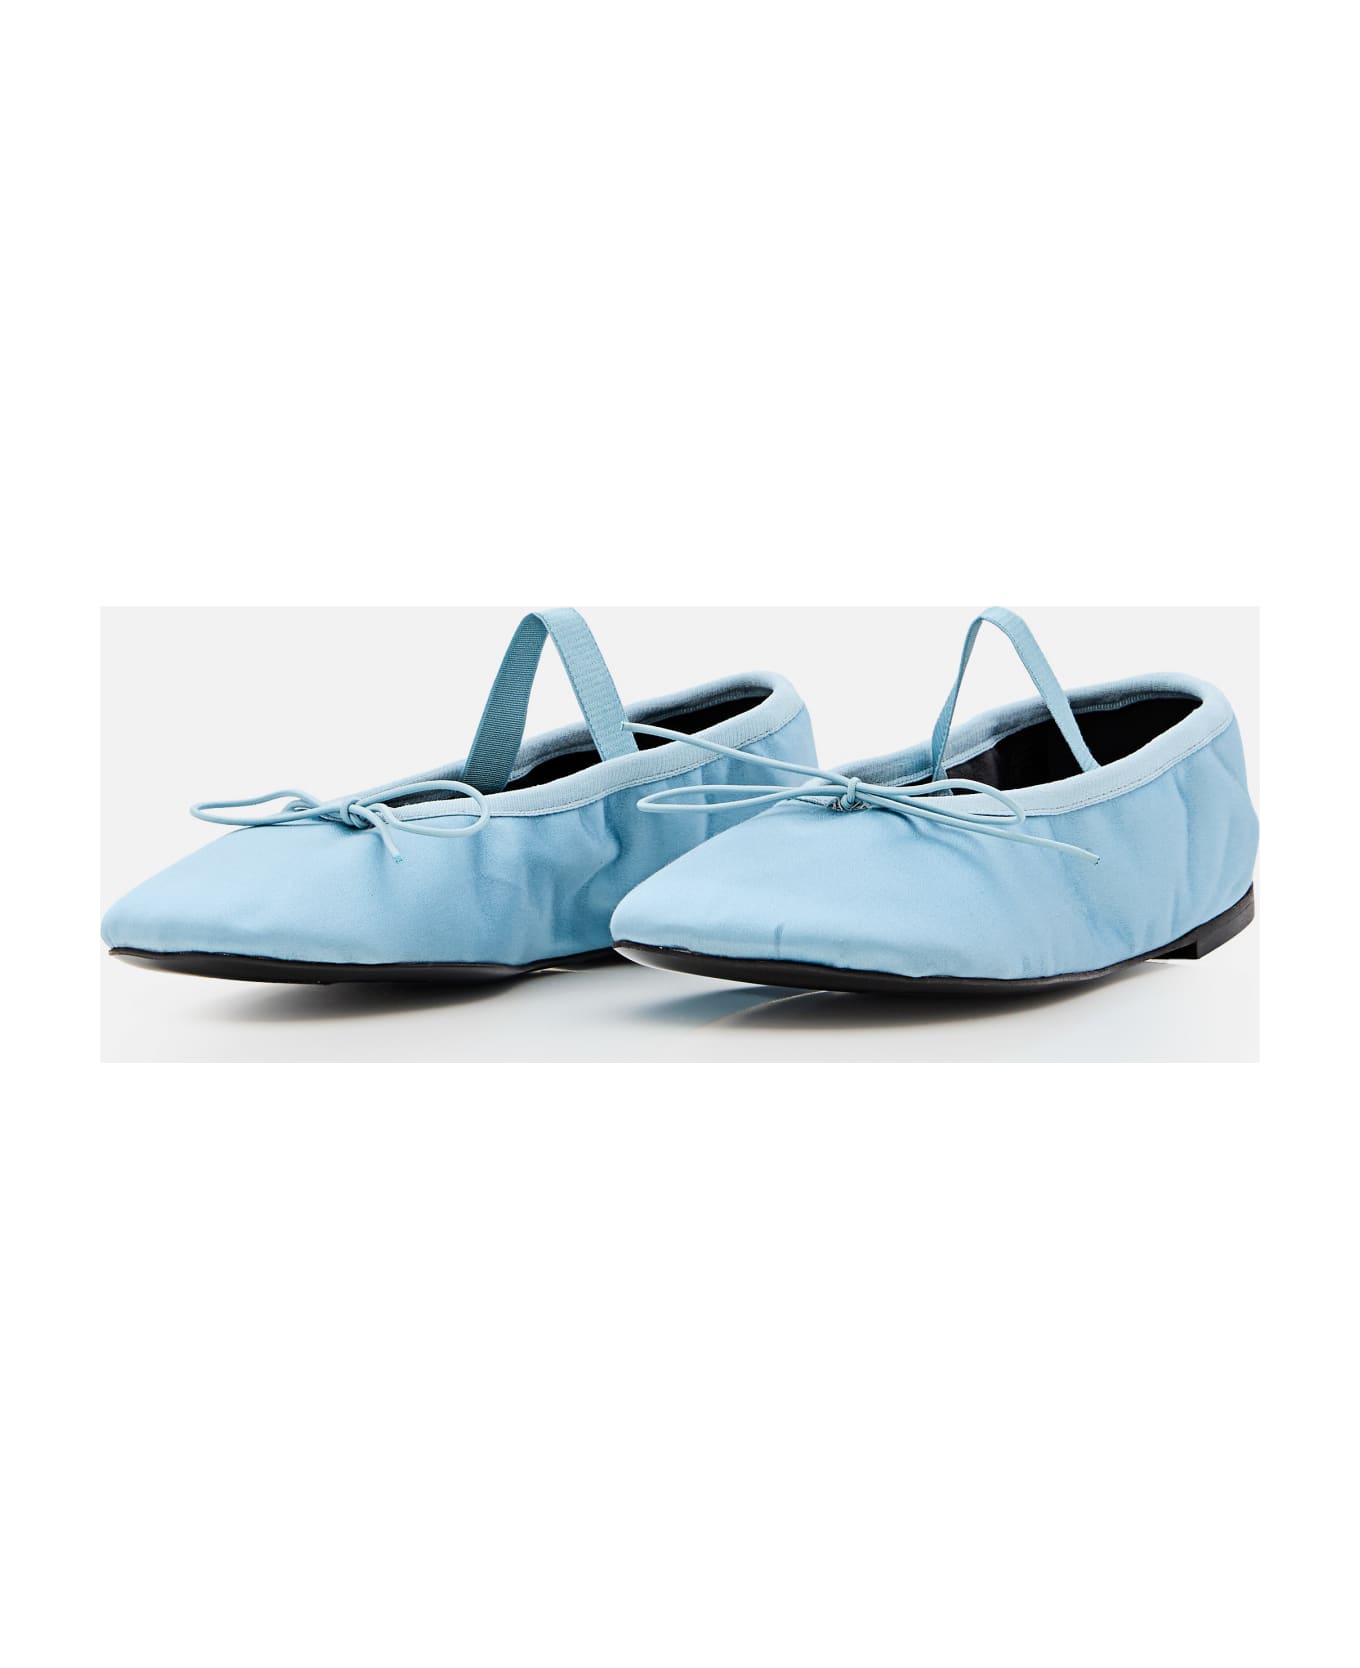 Proenza Schouler Glove Ballet Flats - Blue フラットシューズ